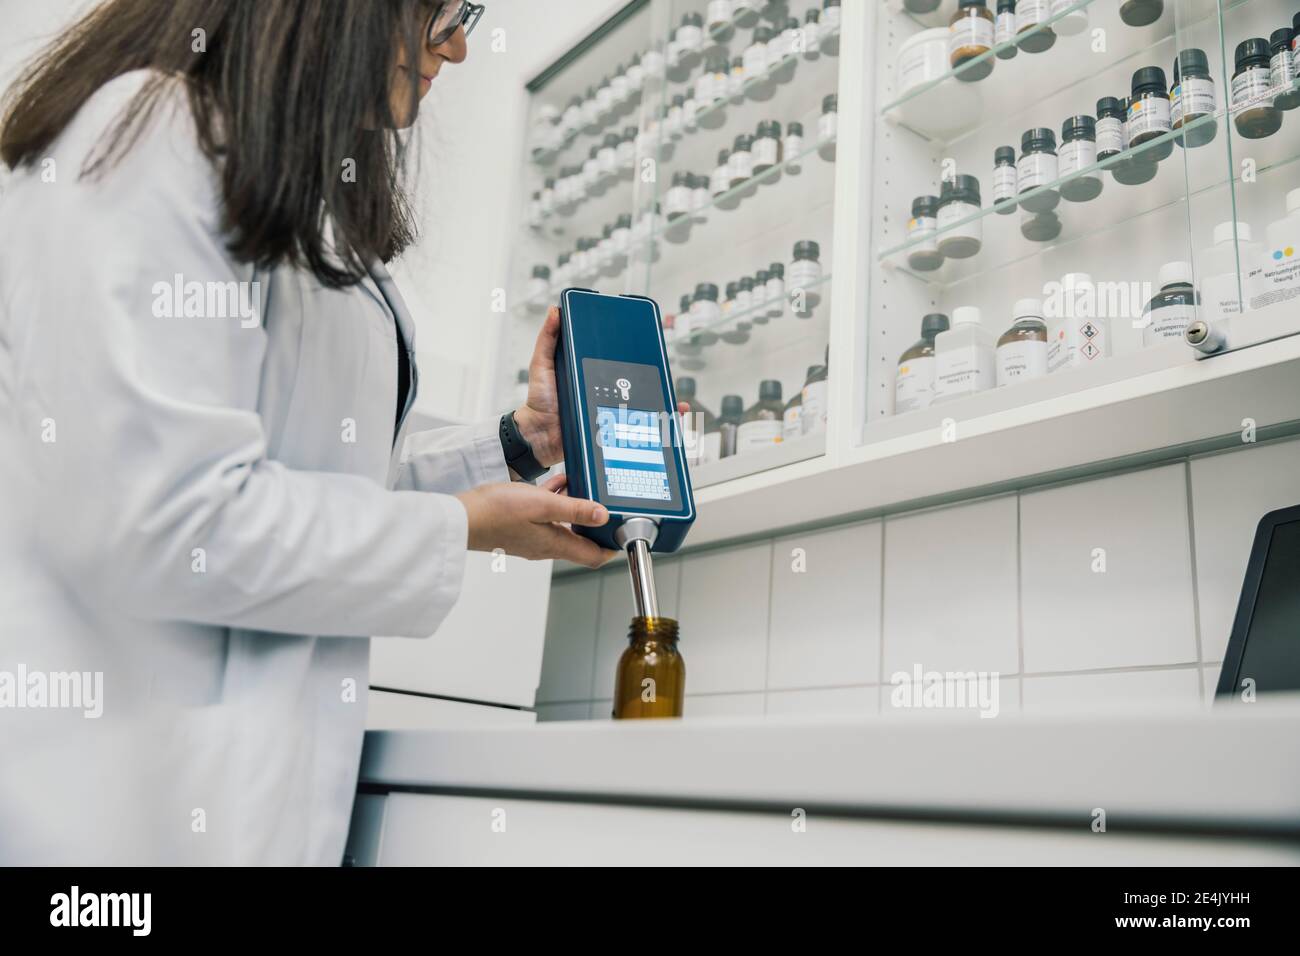 Midsection of female pharmacist using NIR spectrometer in chemist store Stock Photo